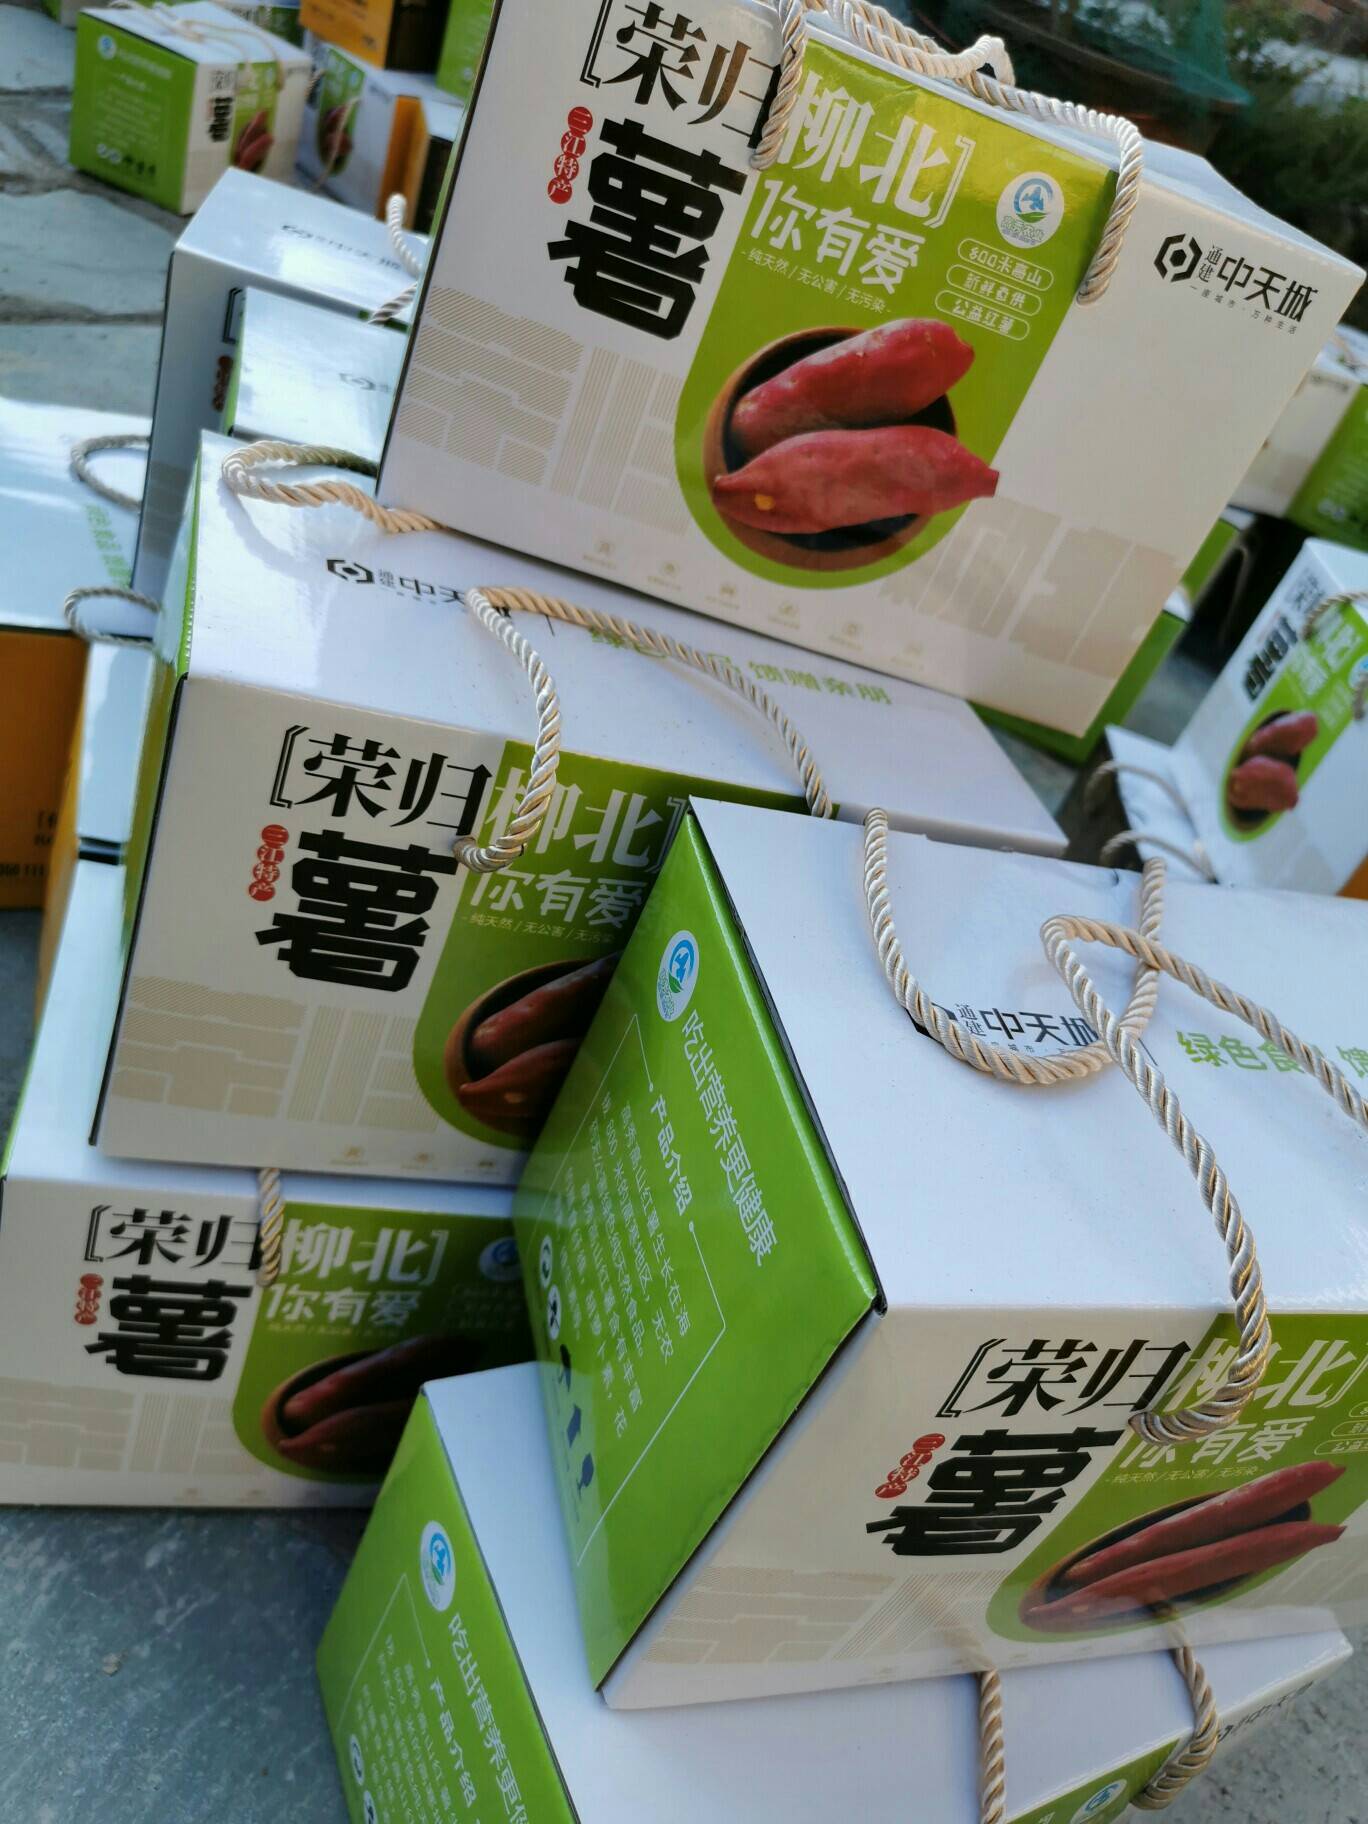 广西三江县邮政电商扶贫项目:高秀红薯5斤装28.8元、8斤装43.8元 包邮